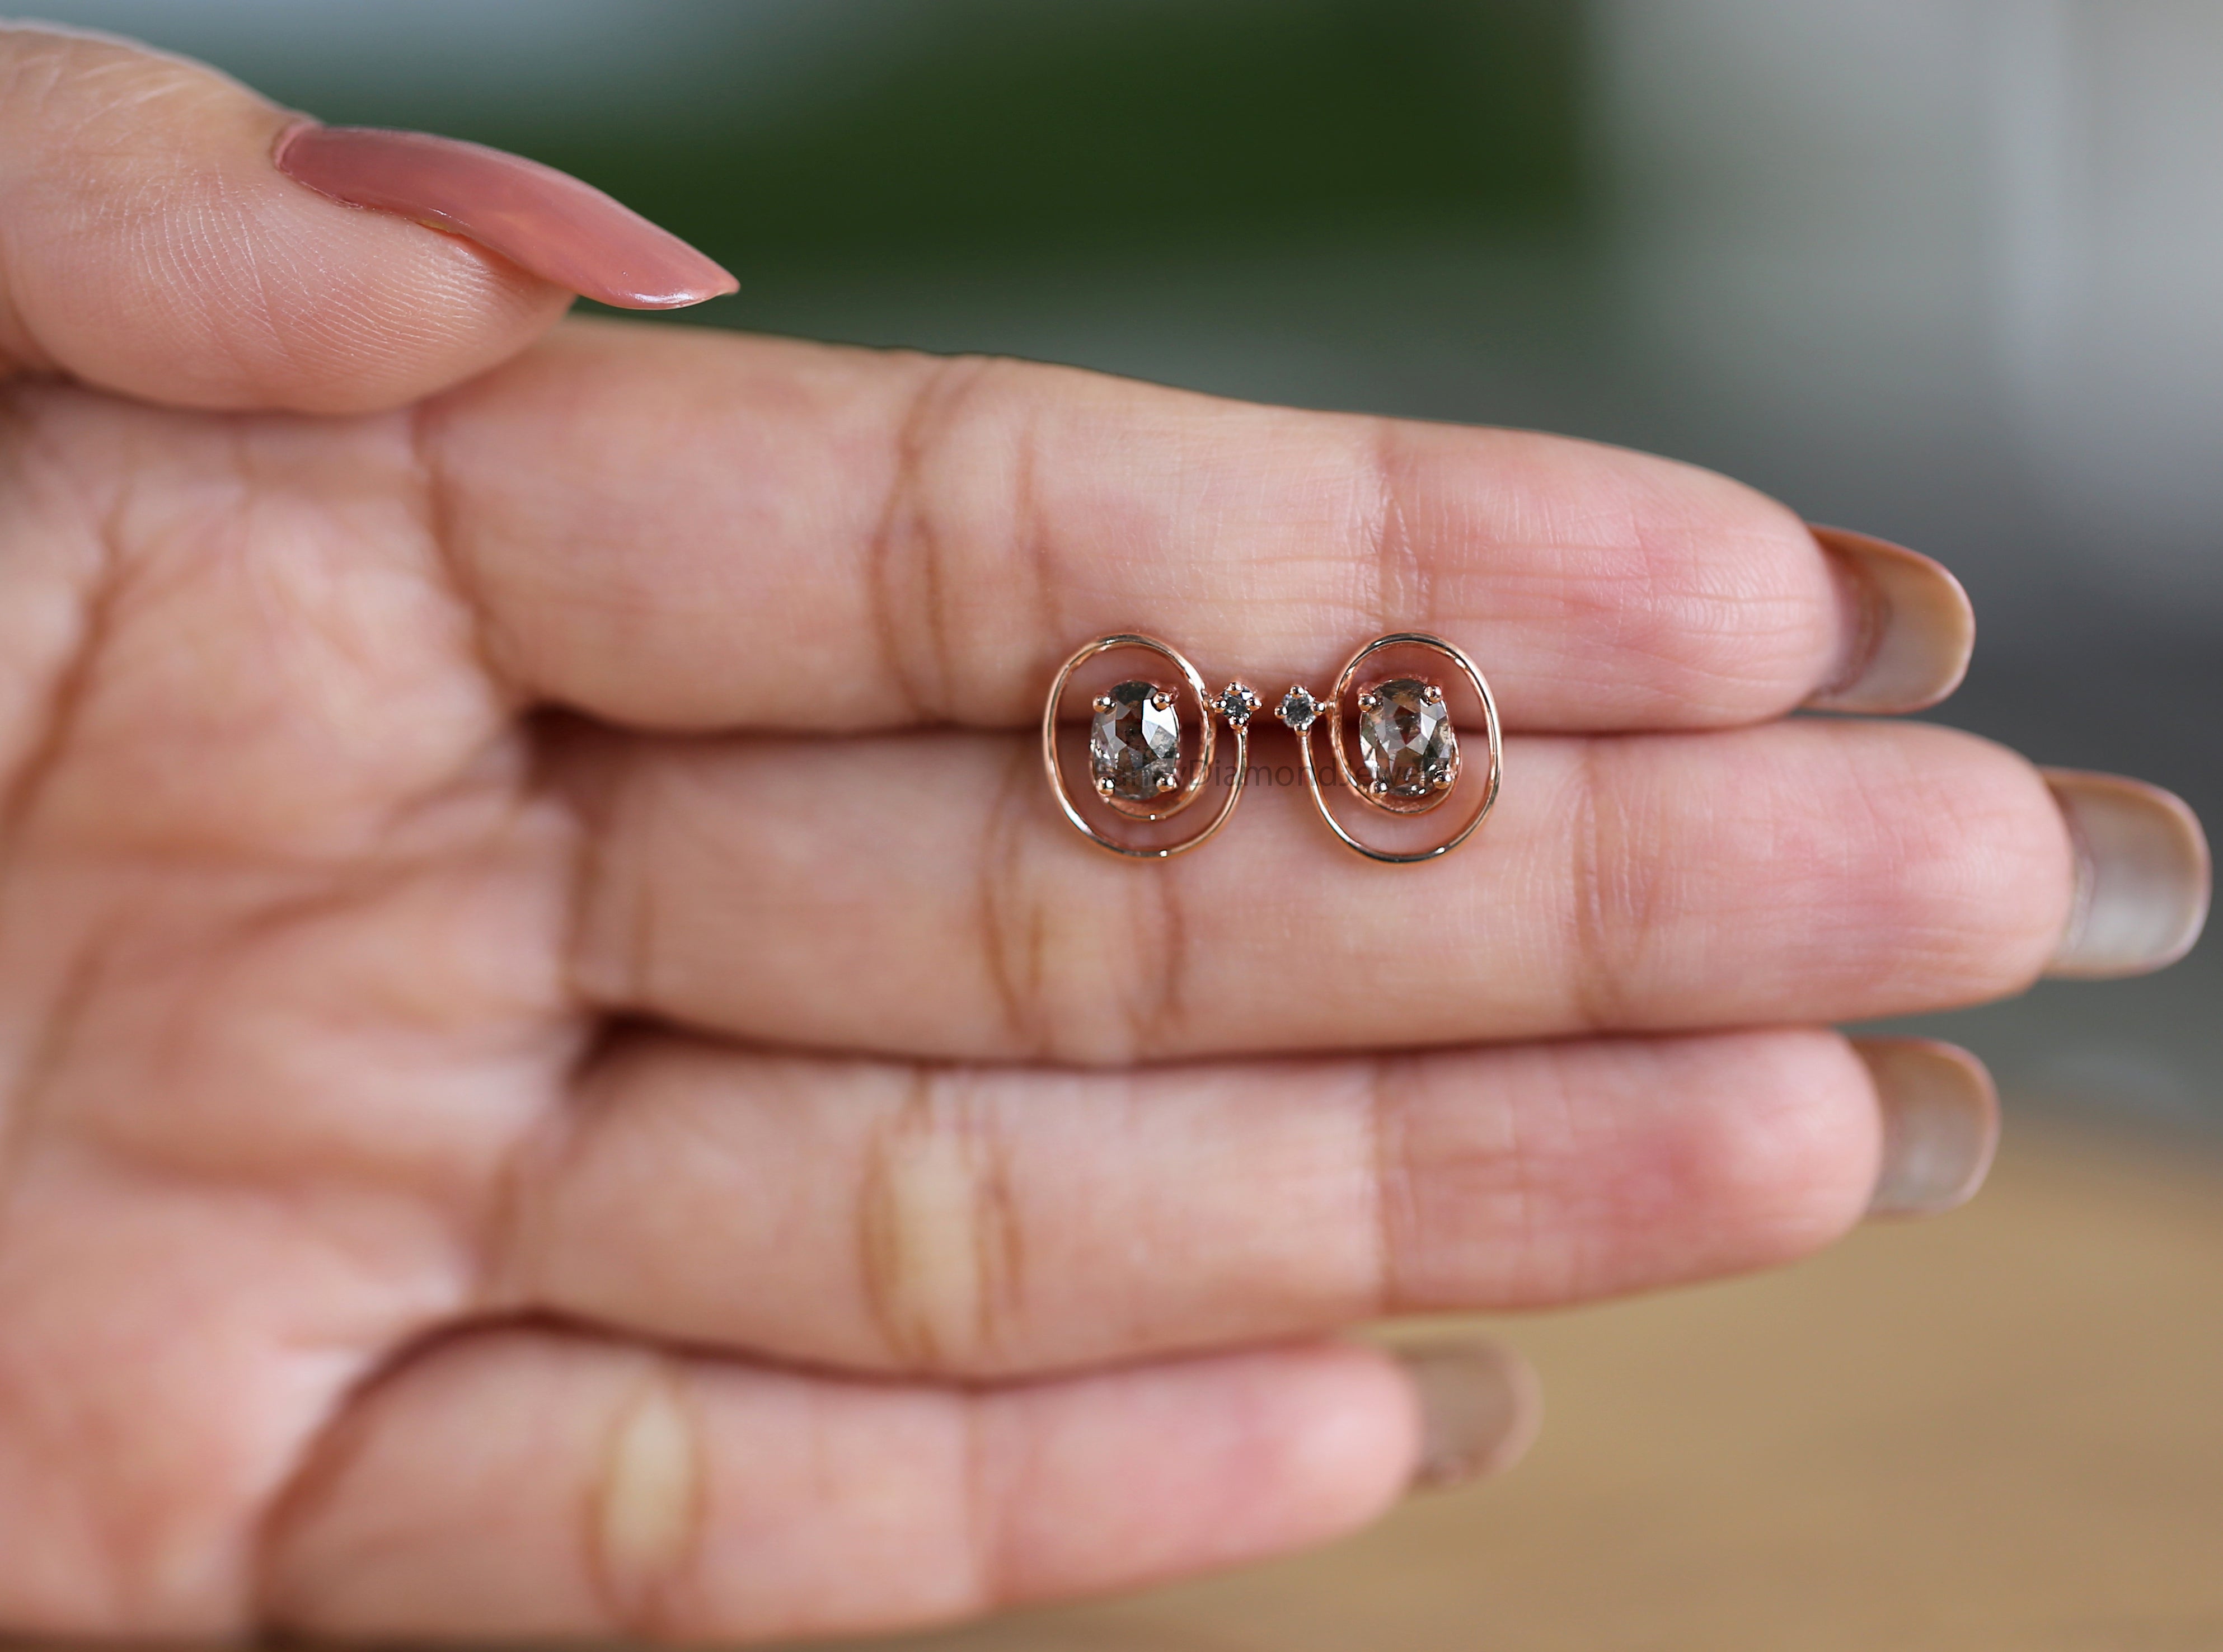 Oval Salt And Pepper Diamond Earring, Oval Shape Earring, Prong Earring, Engagement Earring, Earlobe Earrings, Earrings Jewelry, KDN969